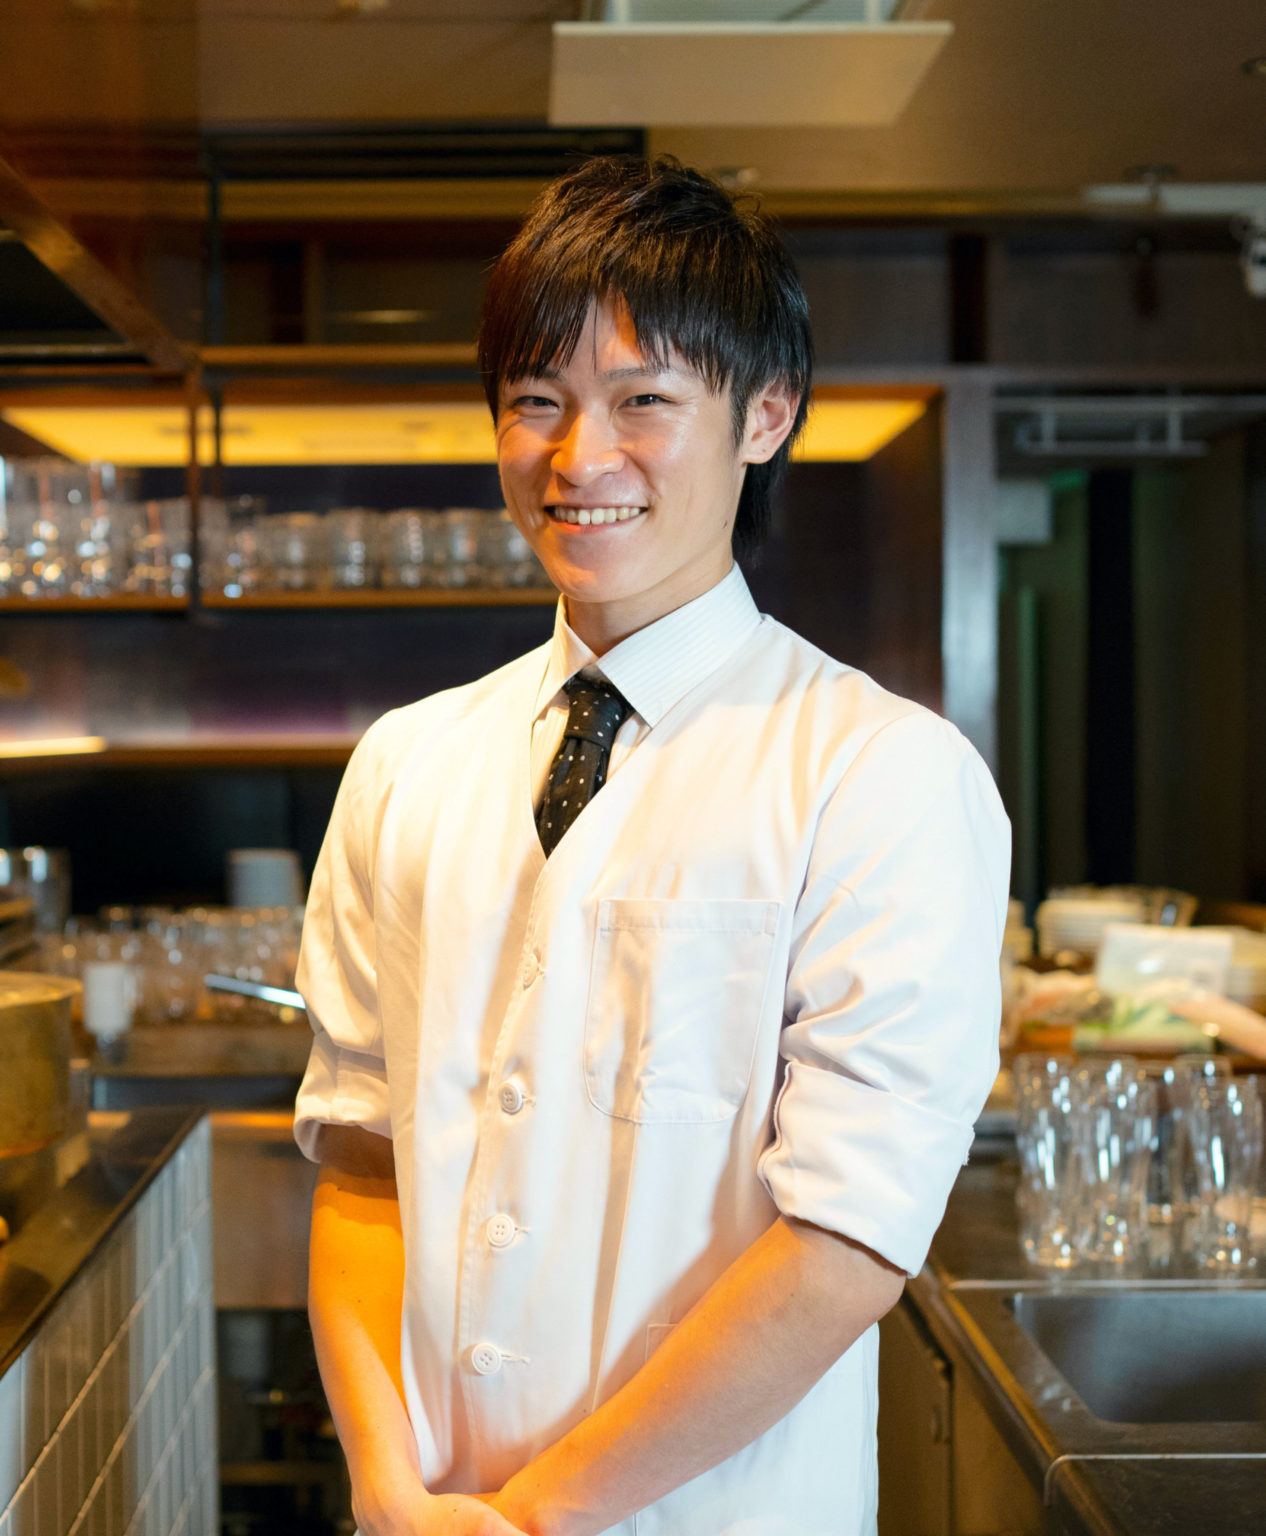 〈会員制 寿司割烹鷹勝 銀座本店〉の板長・橋本竣汰さん。同店では和食を提供（2020年内は日曜のみ）。